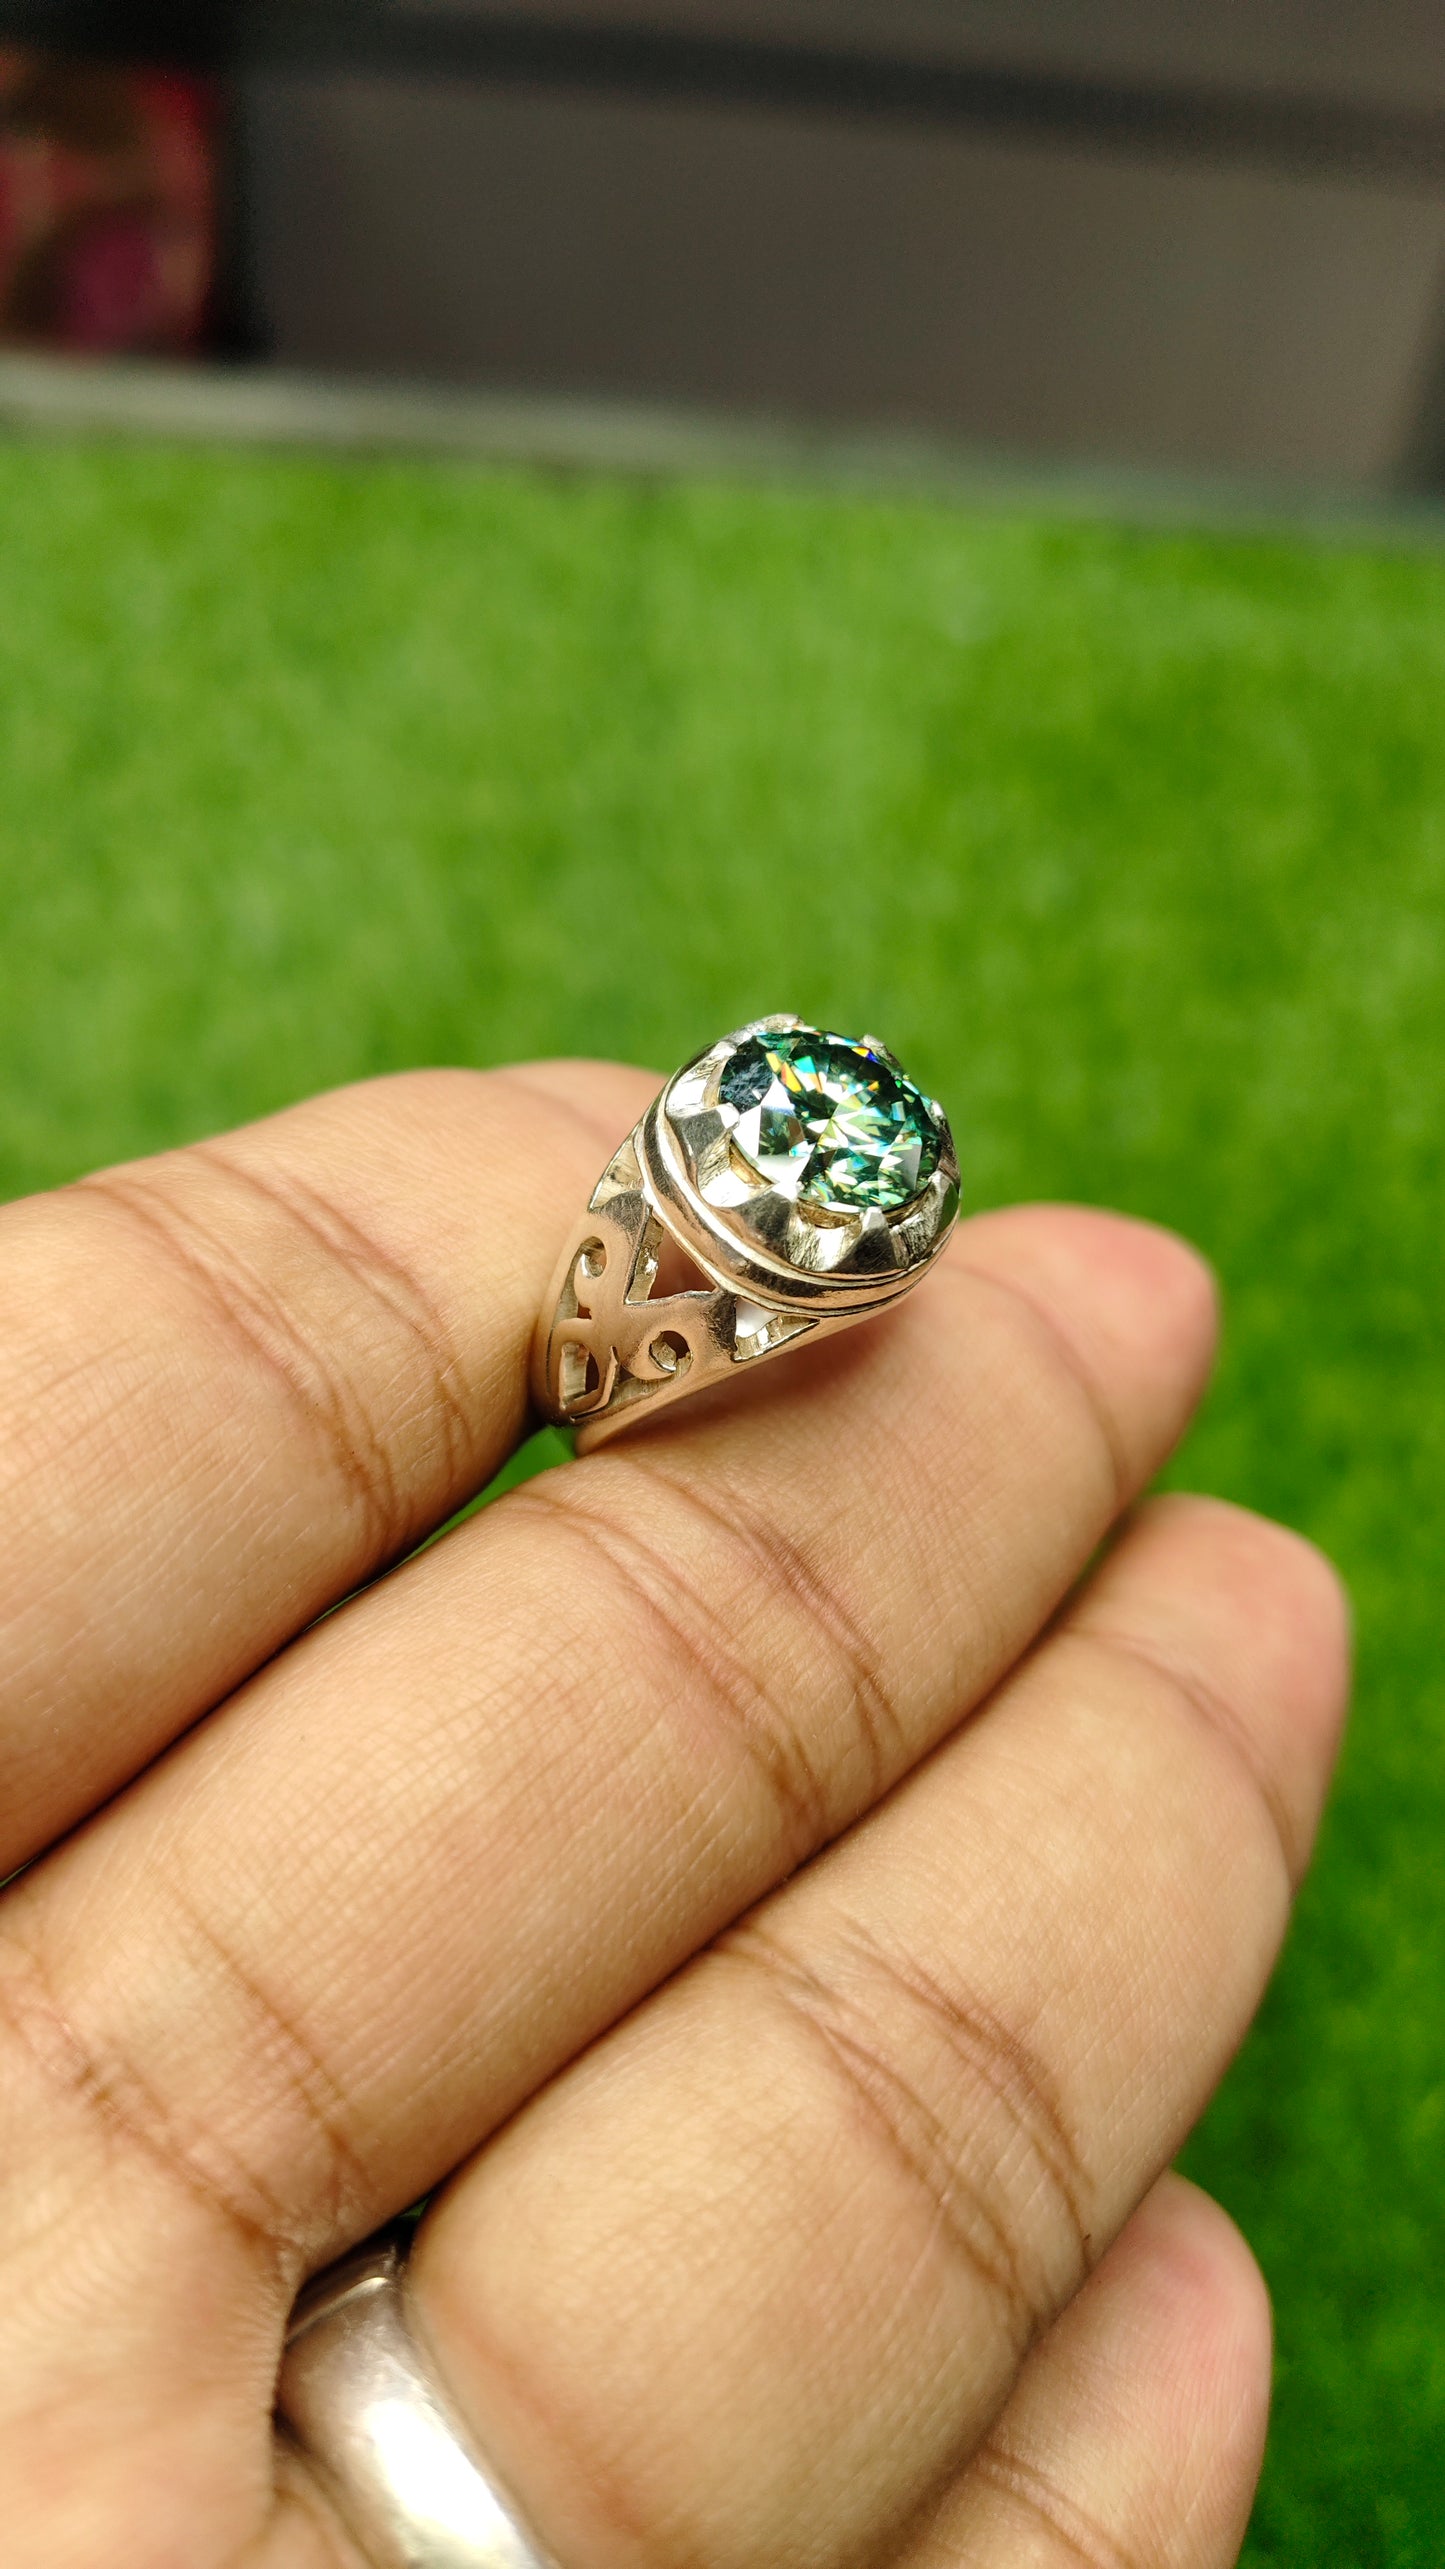 GREEN MOISSANITE DIAMOND 5 CRTS RING